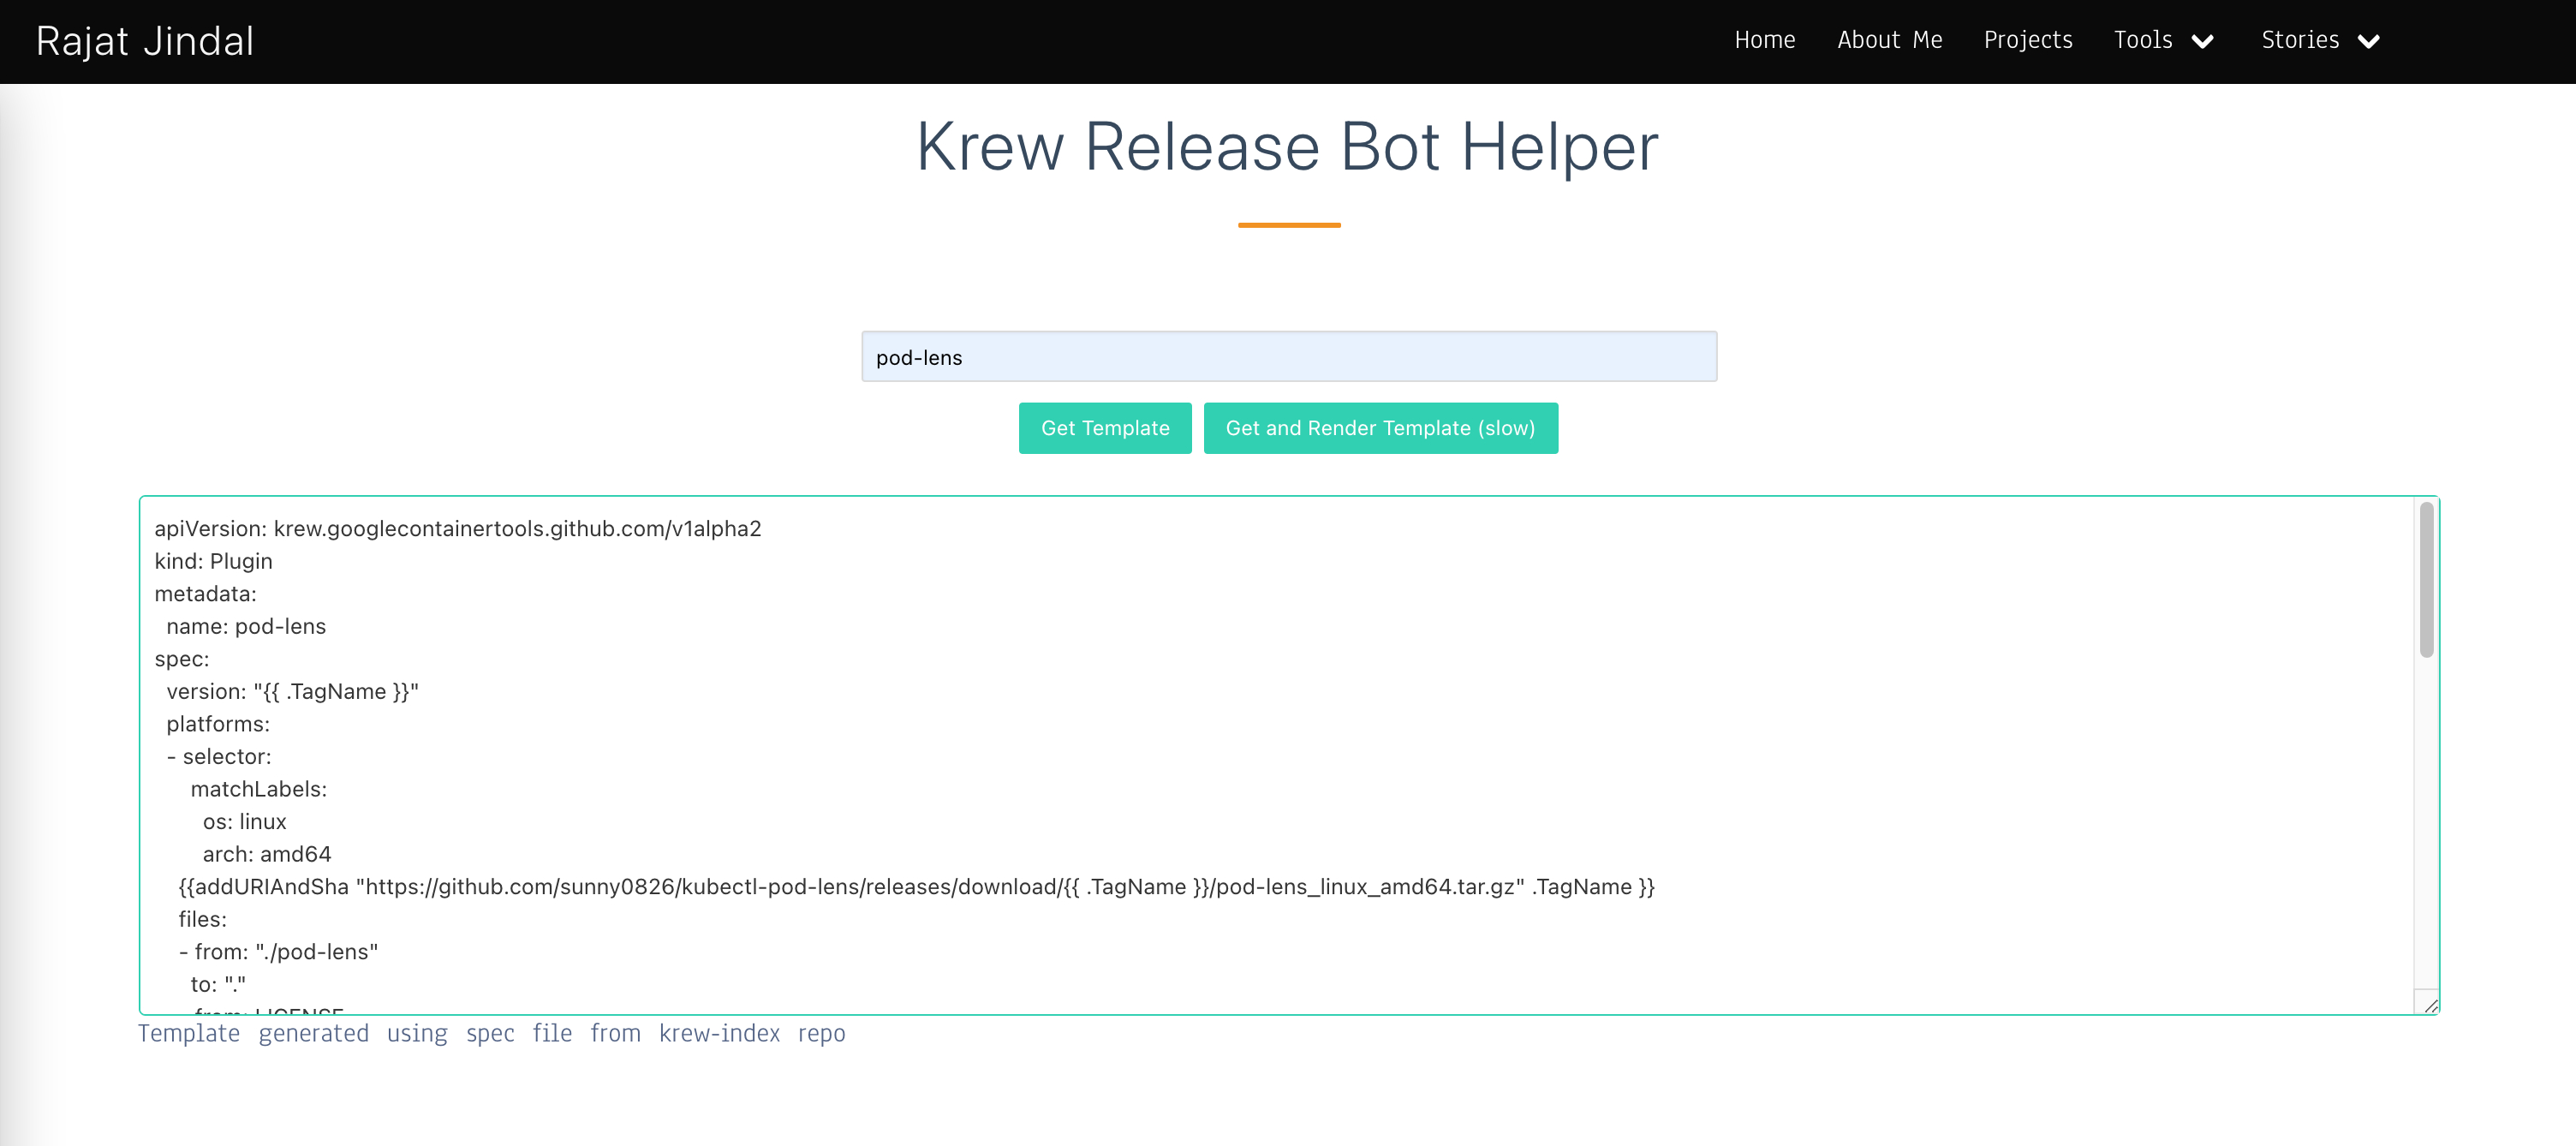 Krew Release Bot Helper